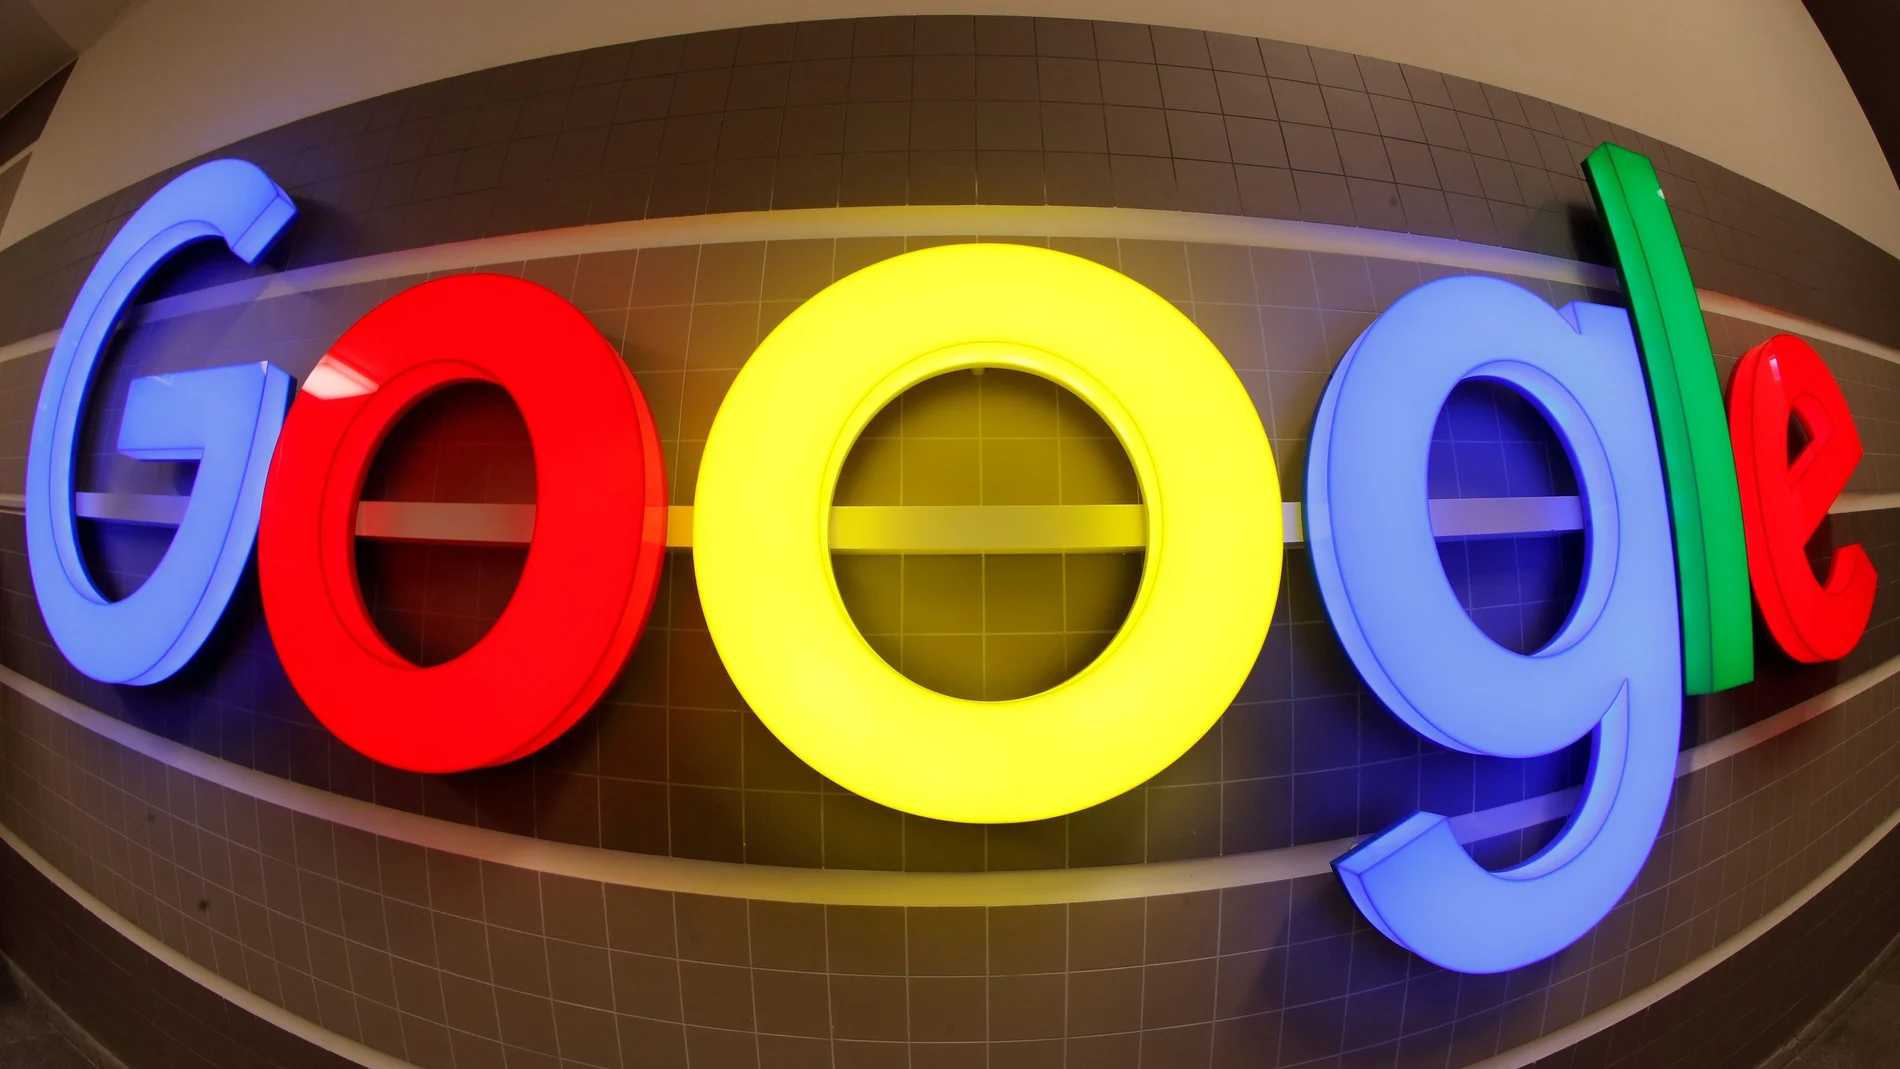 Logotipo de Google iluminado en una oficina de Zurich